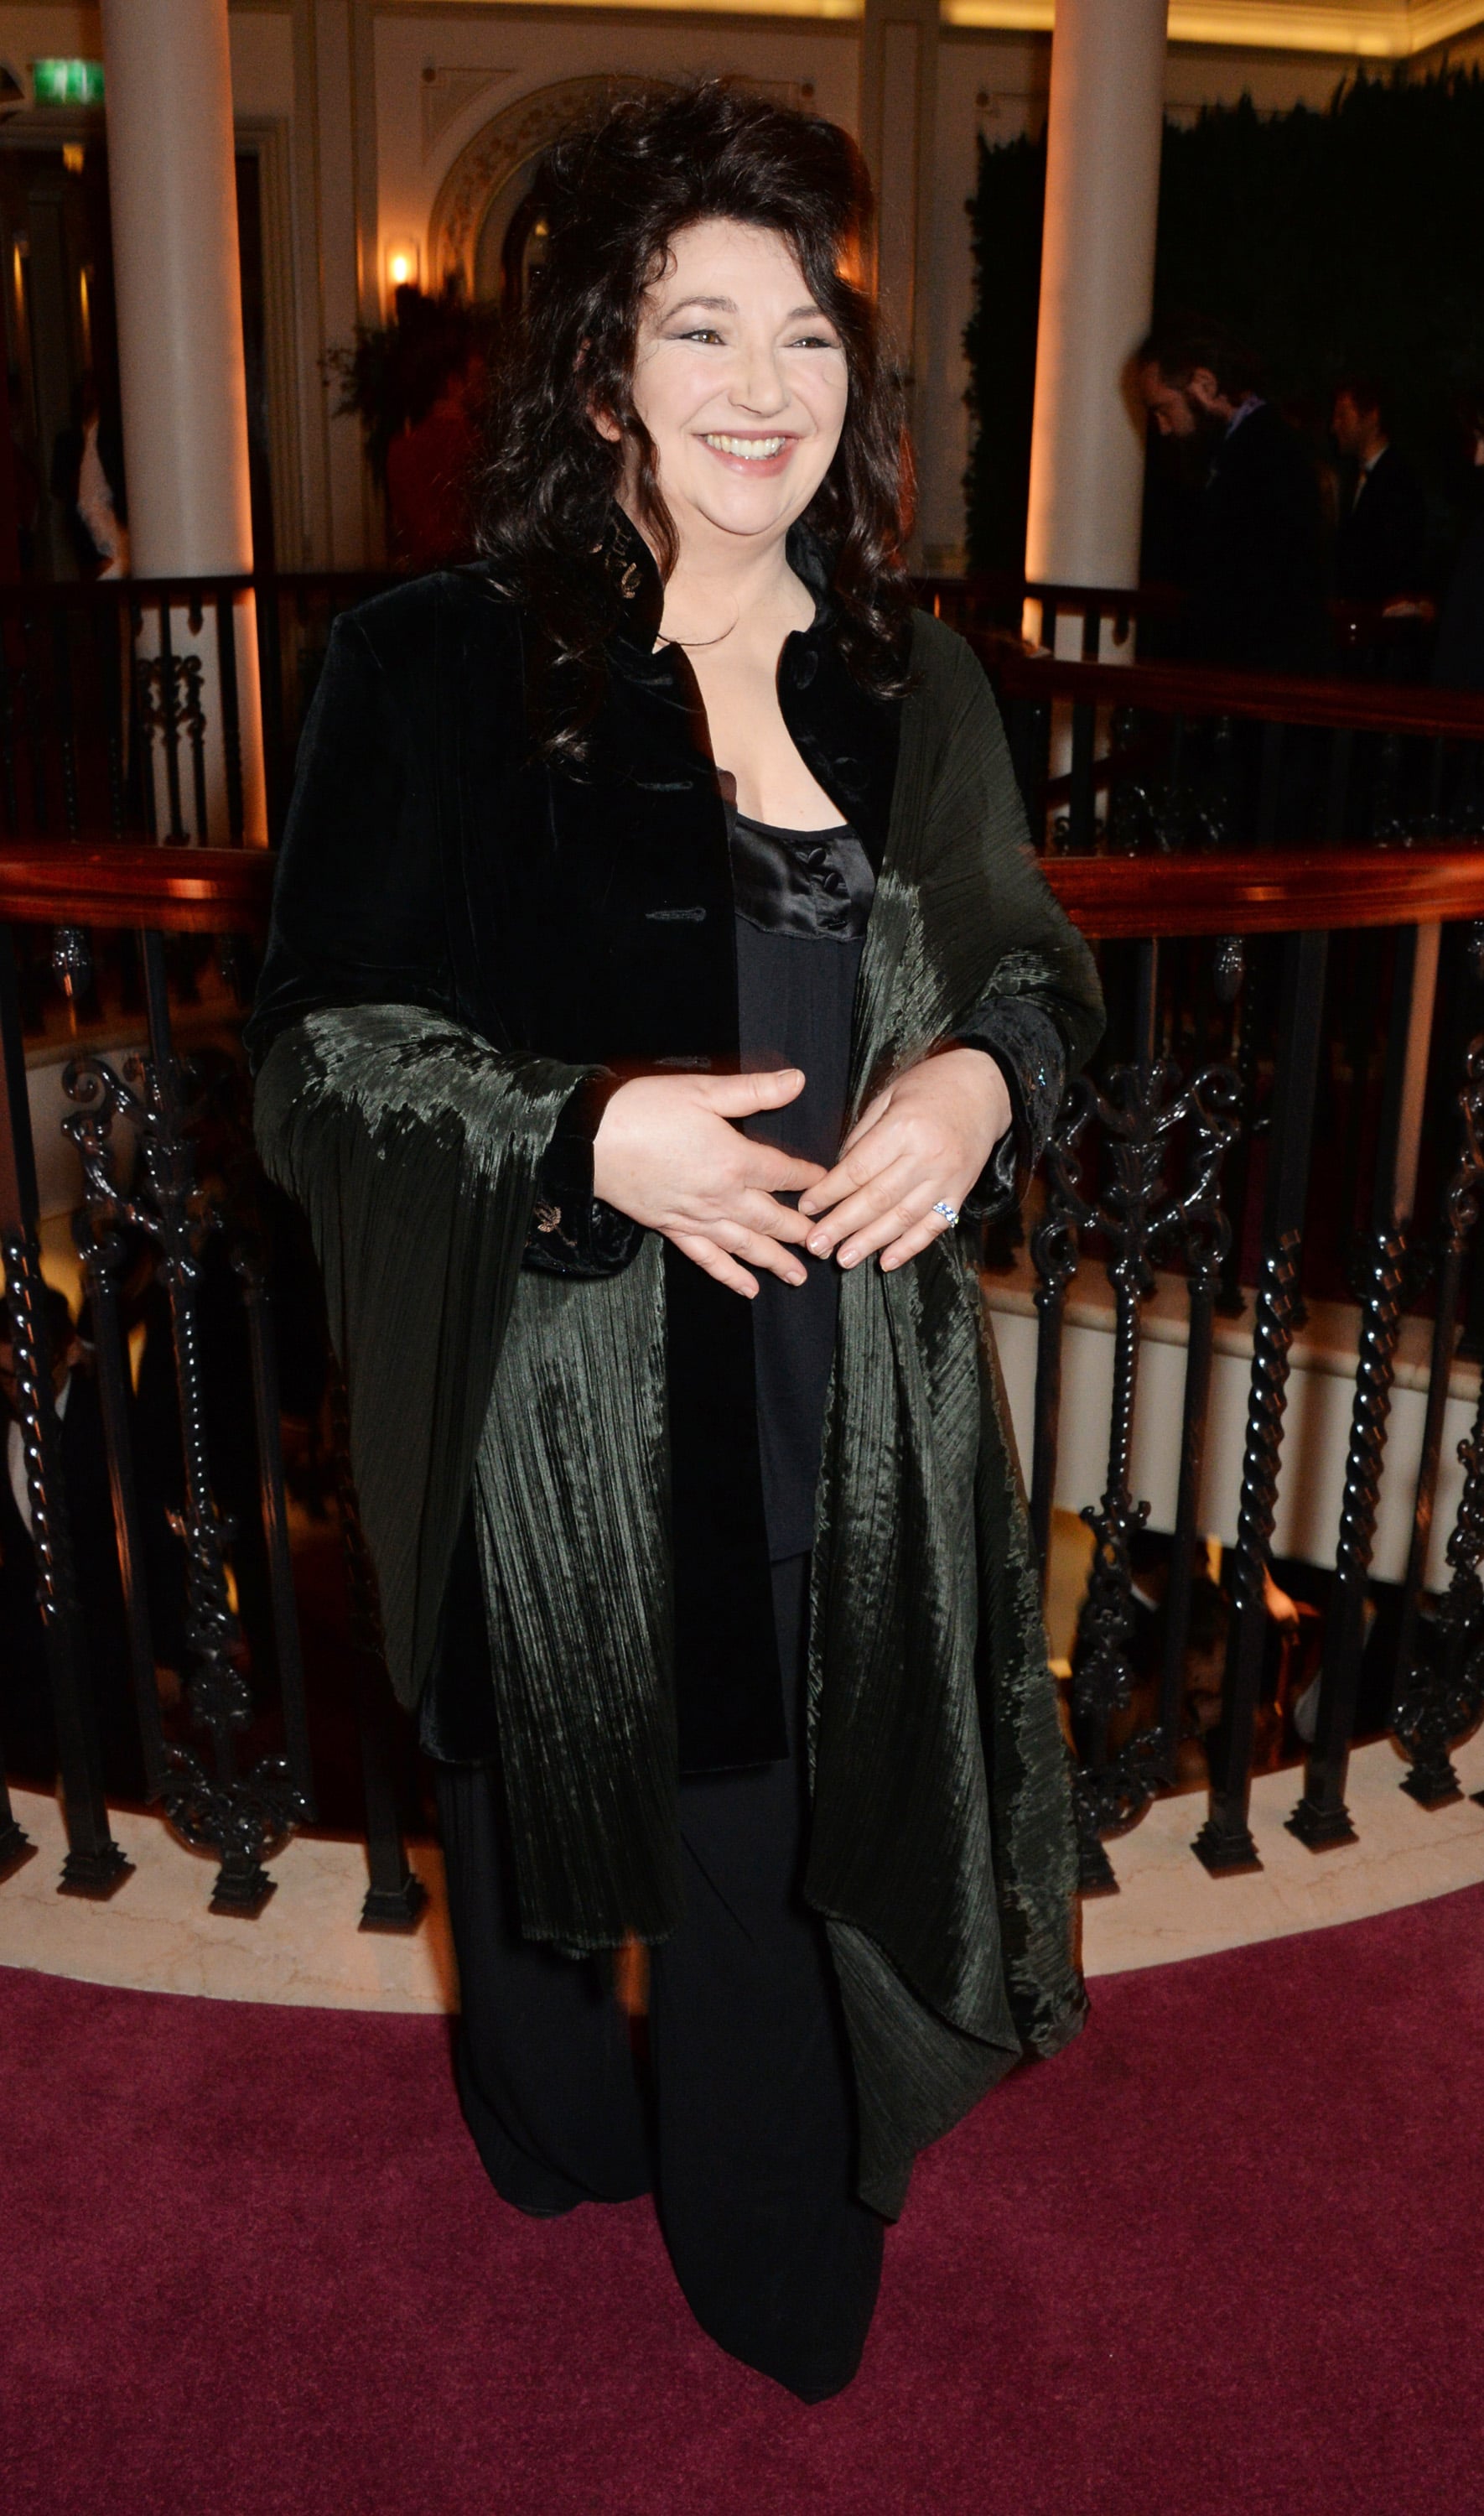 LONDRES, ANGLETERRE - 30 NOVEMBRE : Kate Bush assiste à une réception au champagne lors des 60e London Evening Standard Theatre Awards au London Palladium le 30 novembre 2014 à Londres, en Angleterre.  (Photo de David M. Benett/Getty Images)